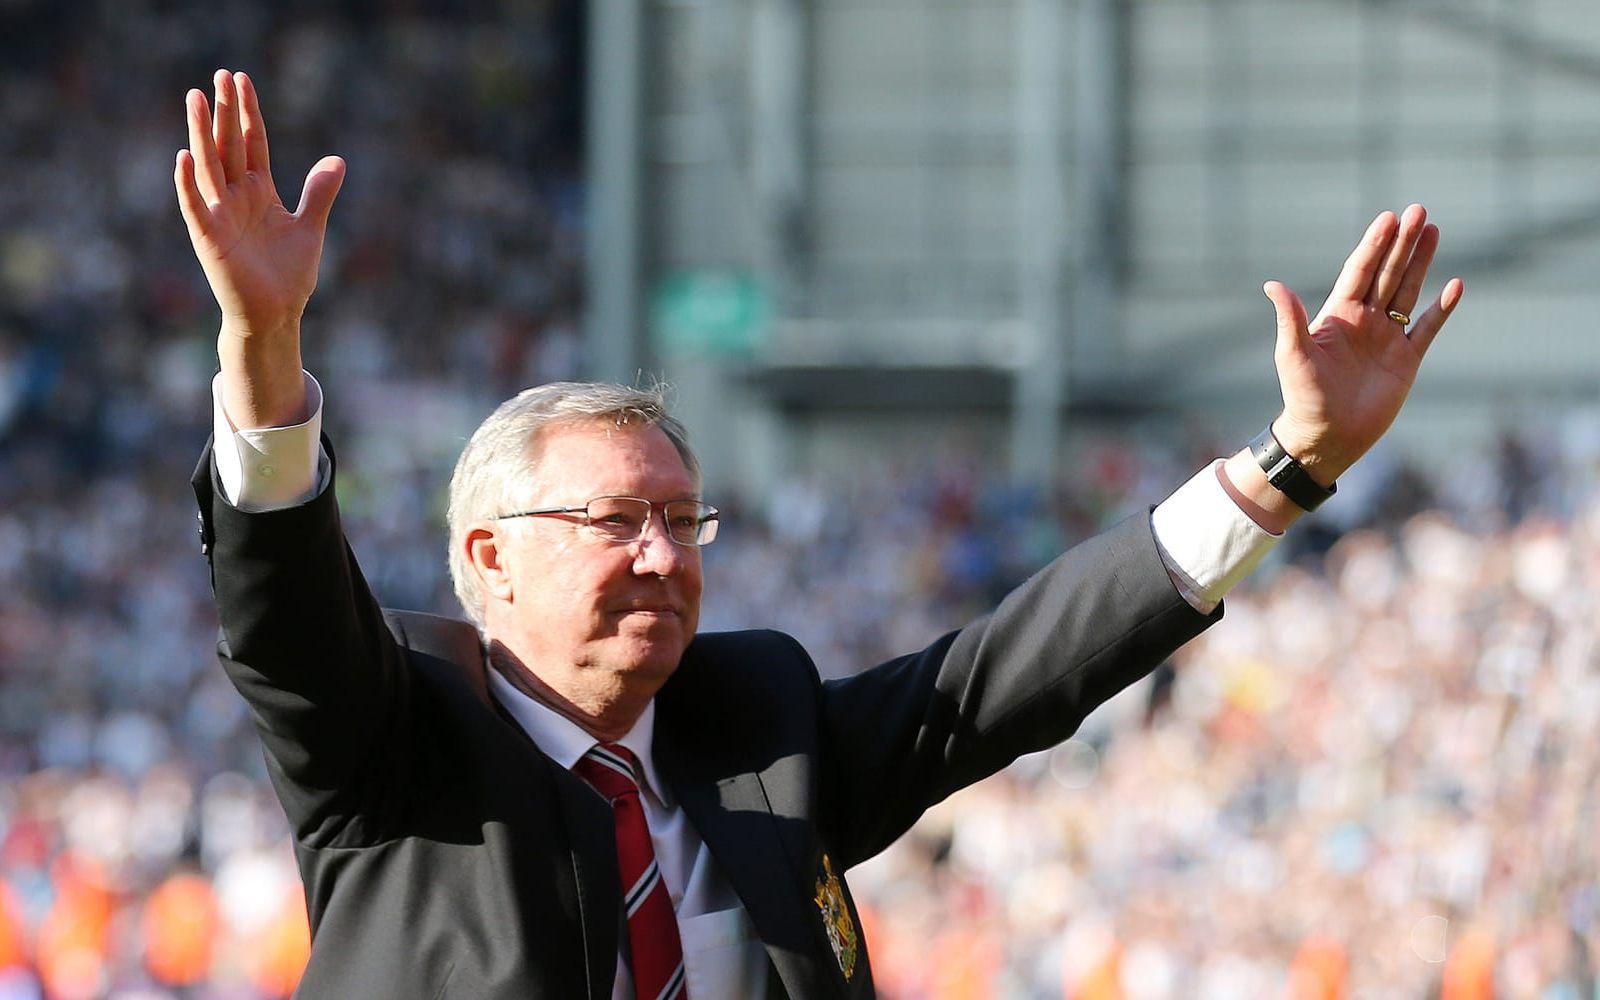 <strong>Sir Alex Ferguson</strong> coachade Manchester United till ligaseger våren 2013, sedan slutade han. Foto: Bildbyrån